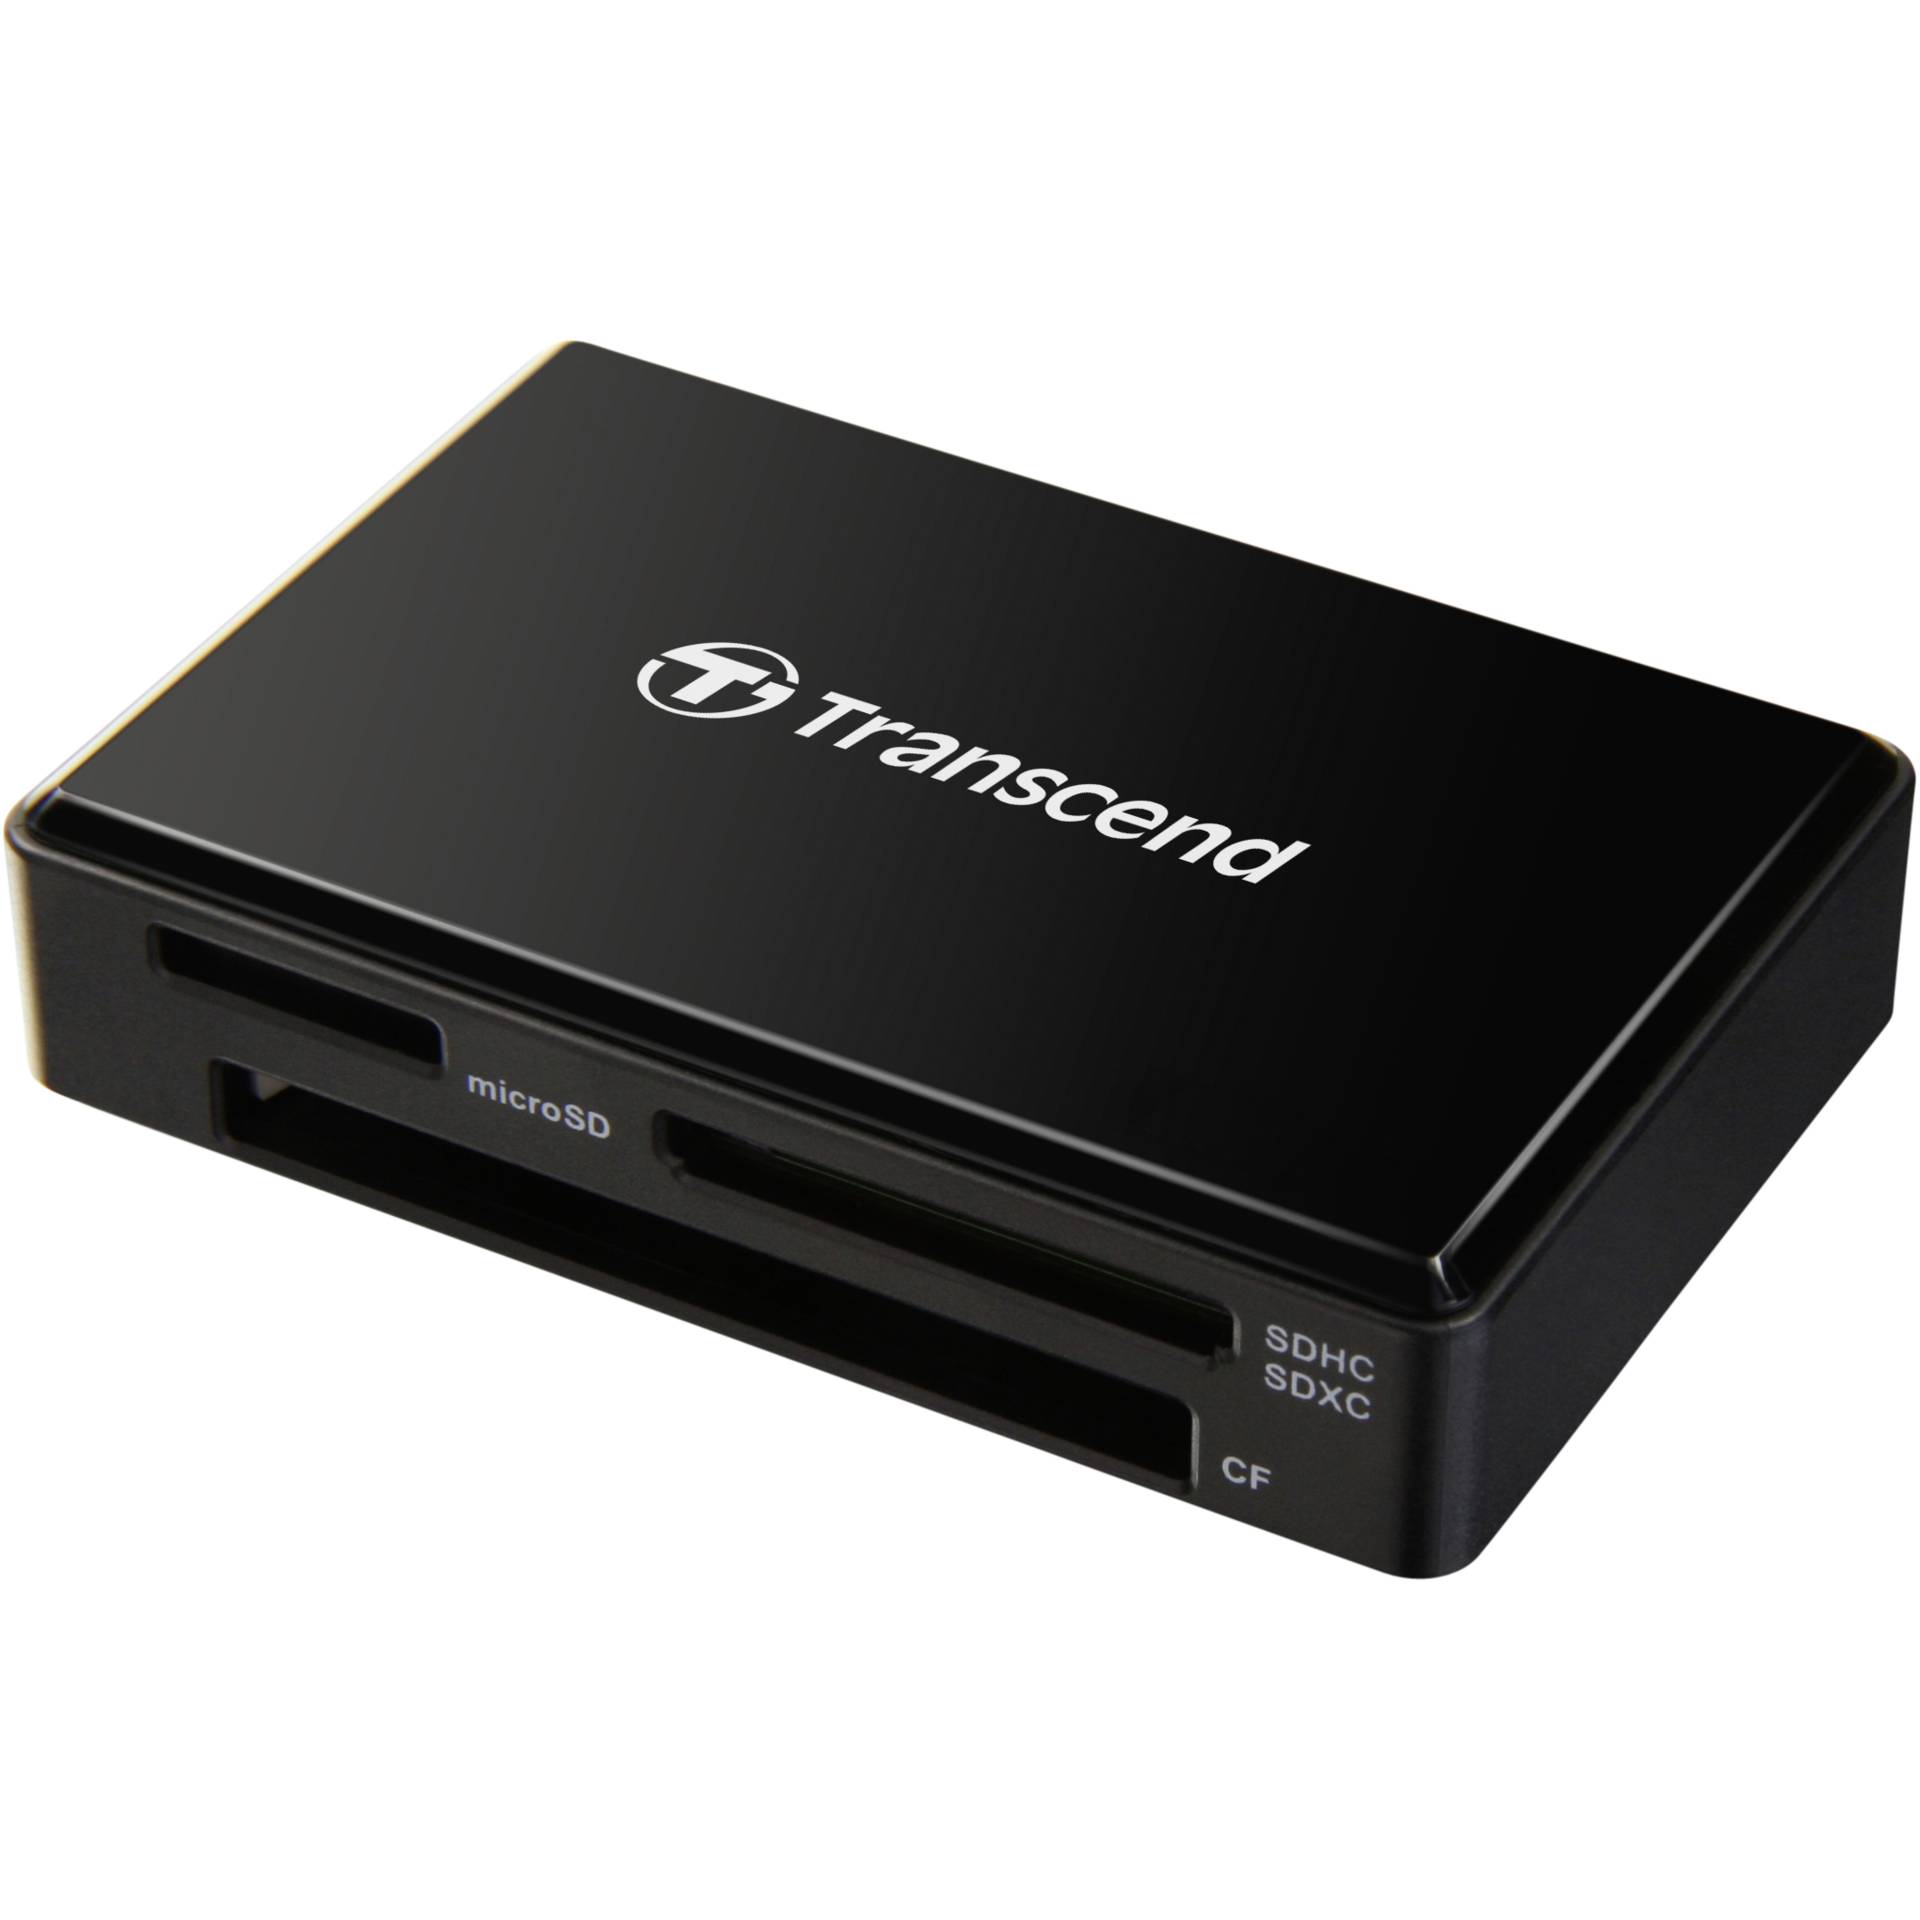 Transcend RDF8 v2 schwarz Multi-Slot-Cardreader, USB-A 3.0 [Stecker], externer Cardreader schwarz